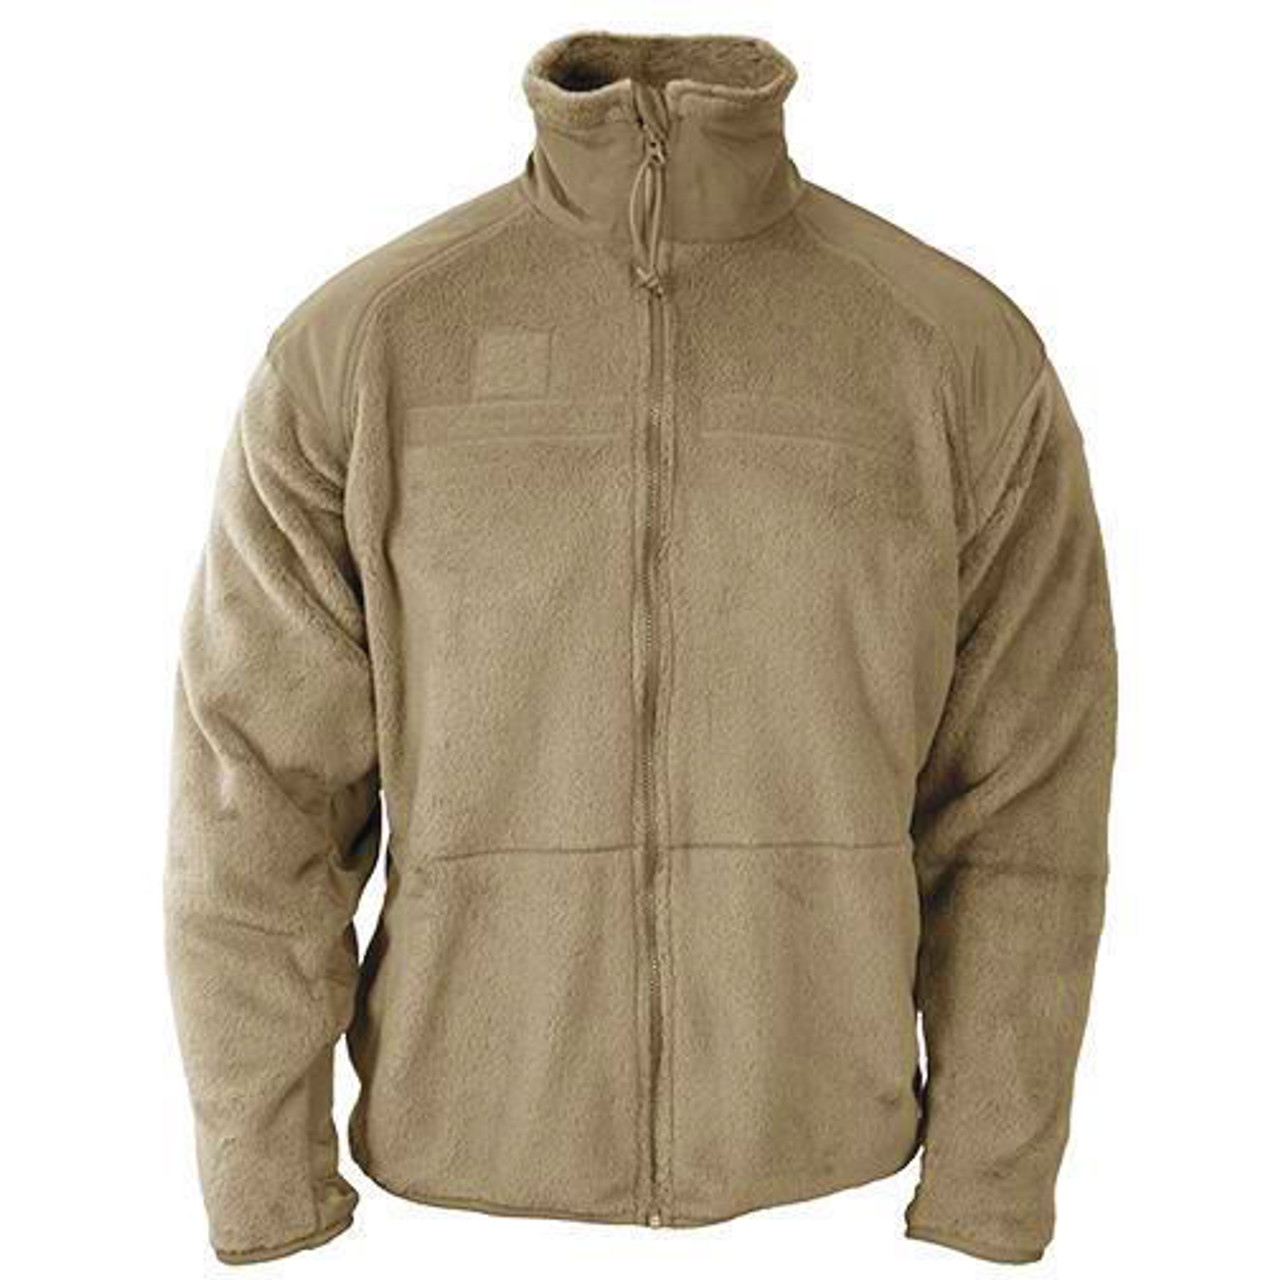 Propper Gen III Fleece Jacket Tan 499